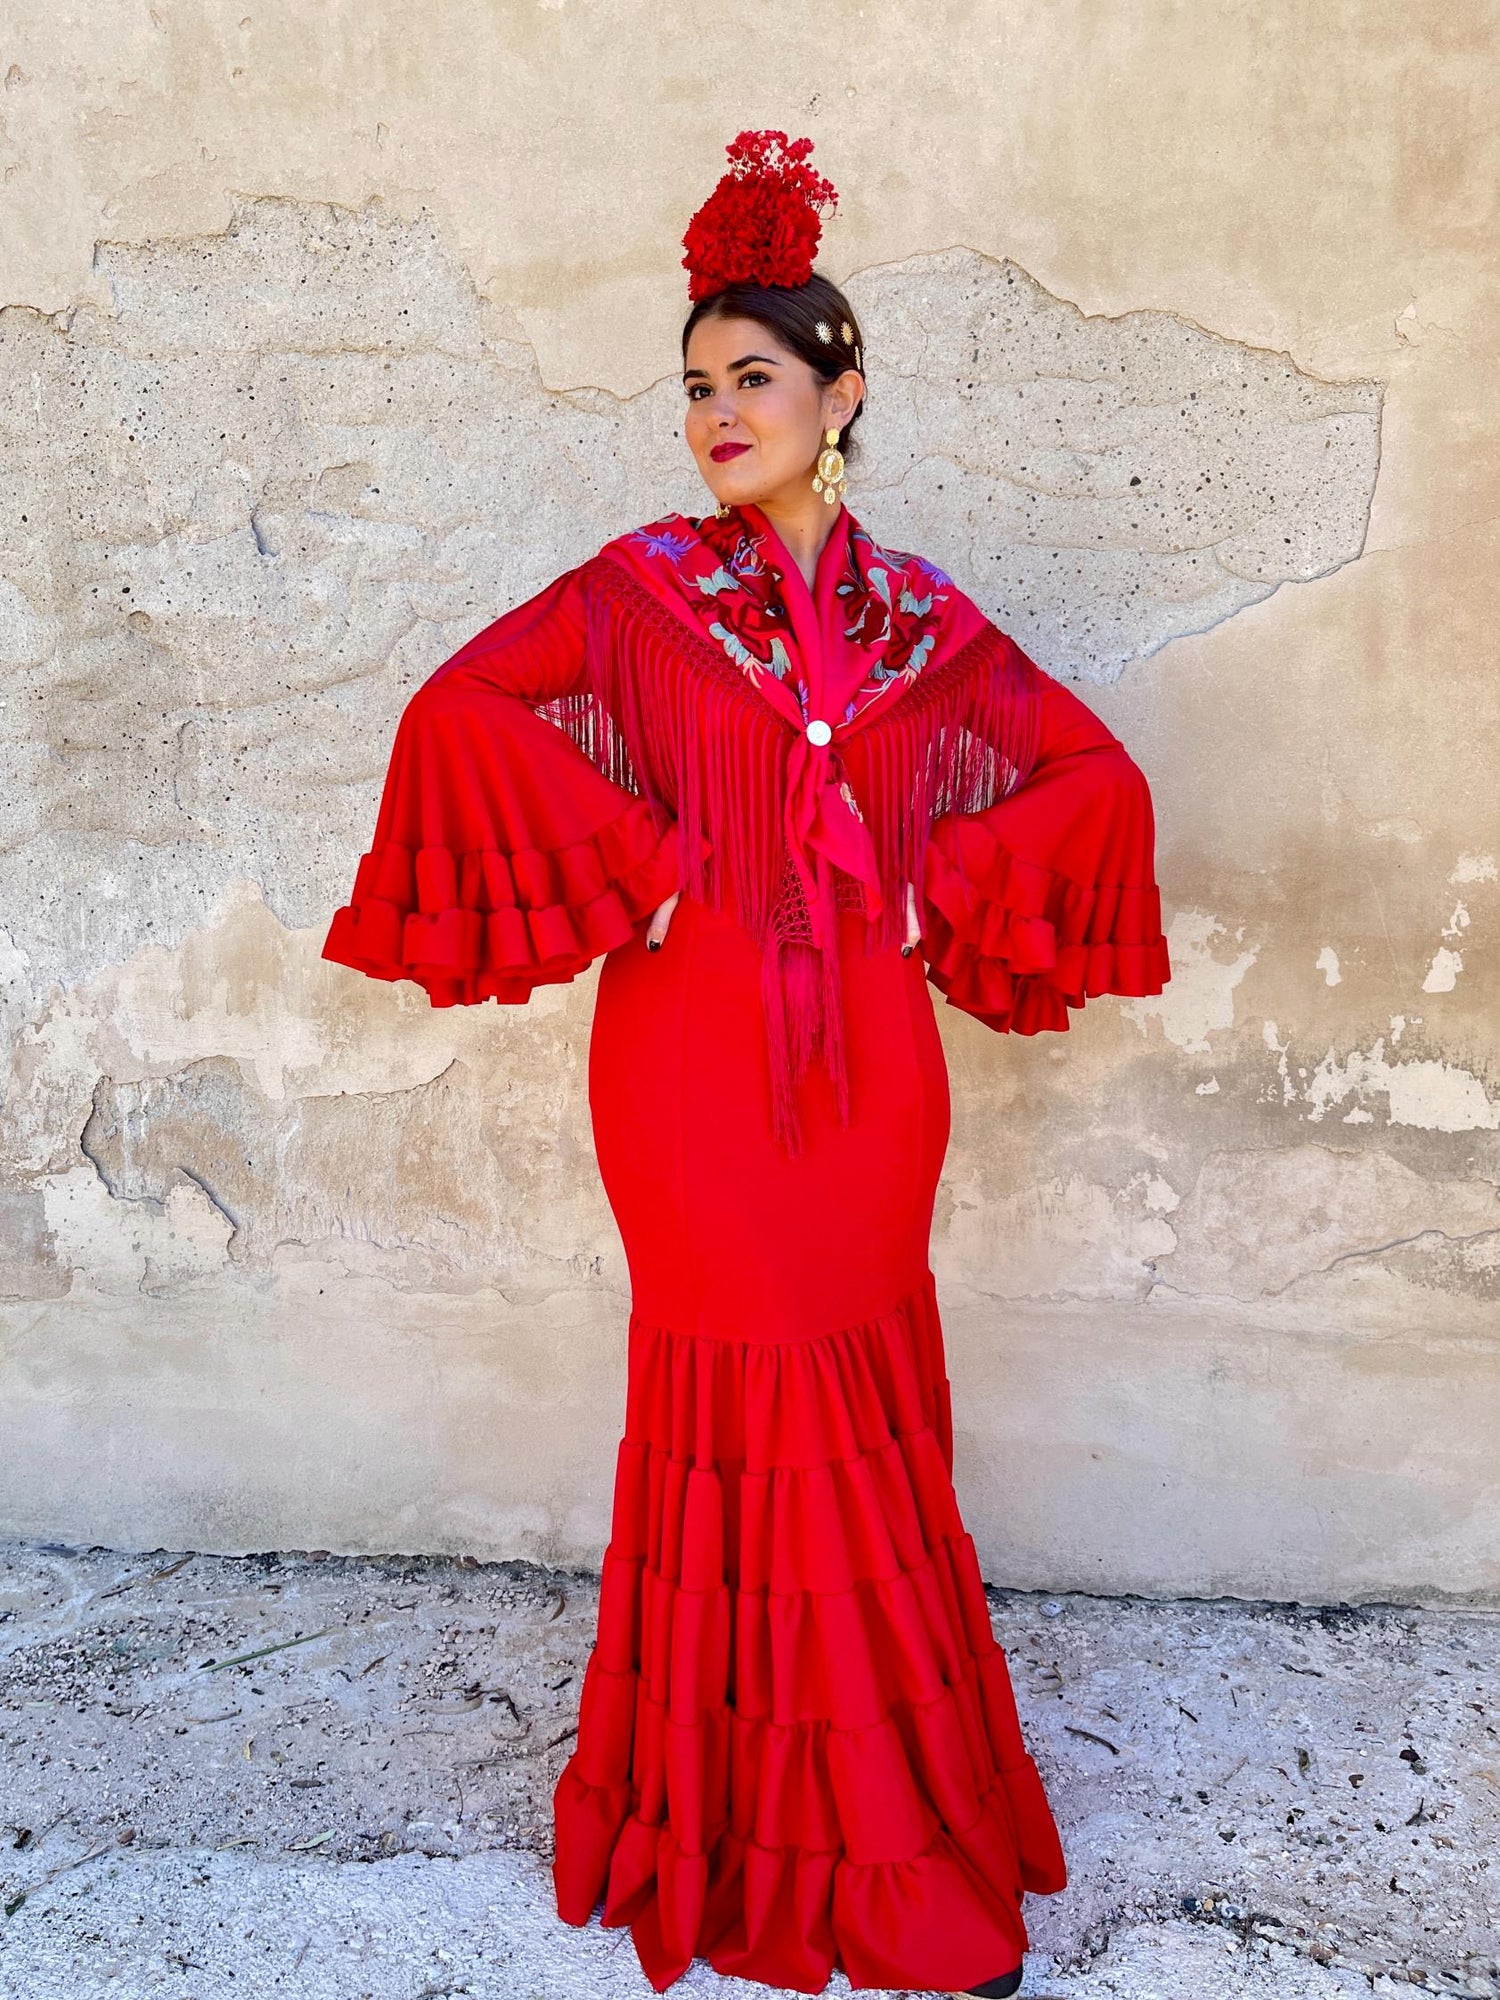 Koralti  Tienda de Moda Flamenca – koralti